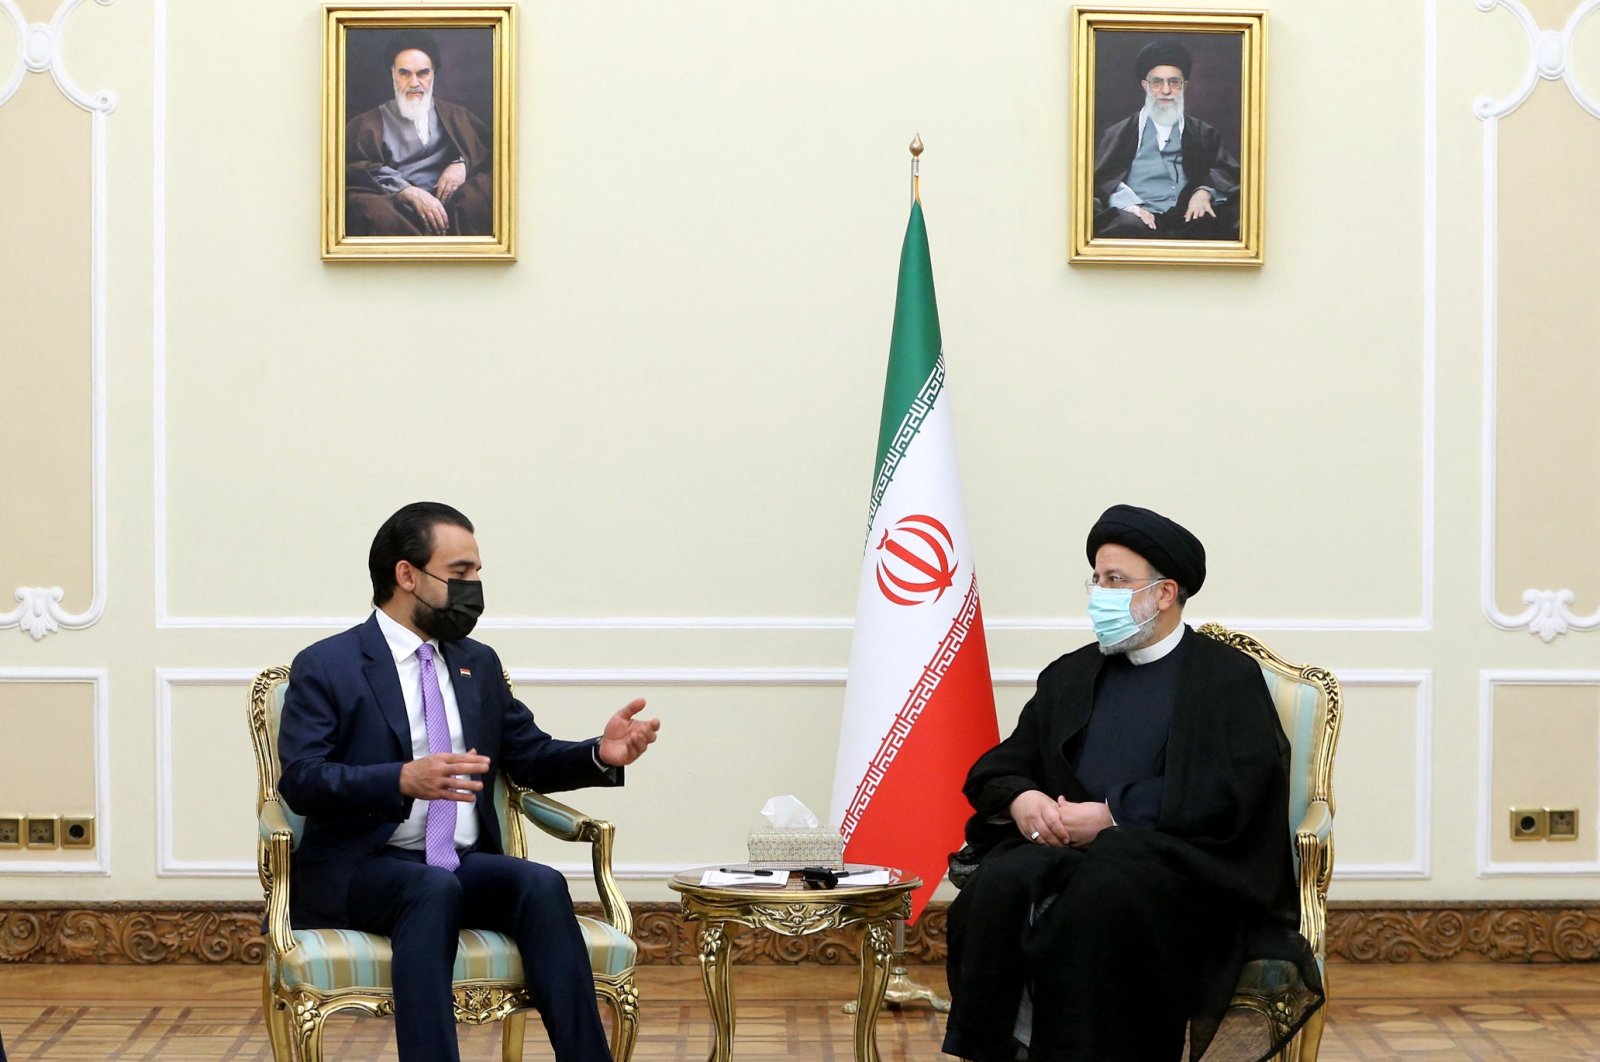 Ketegangan Iran-Saudi bisa segera mereda: PM Irak